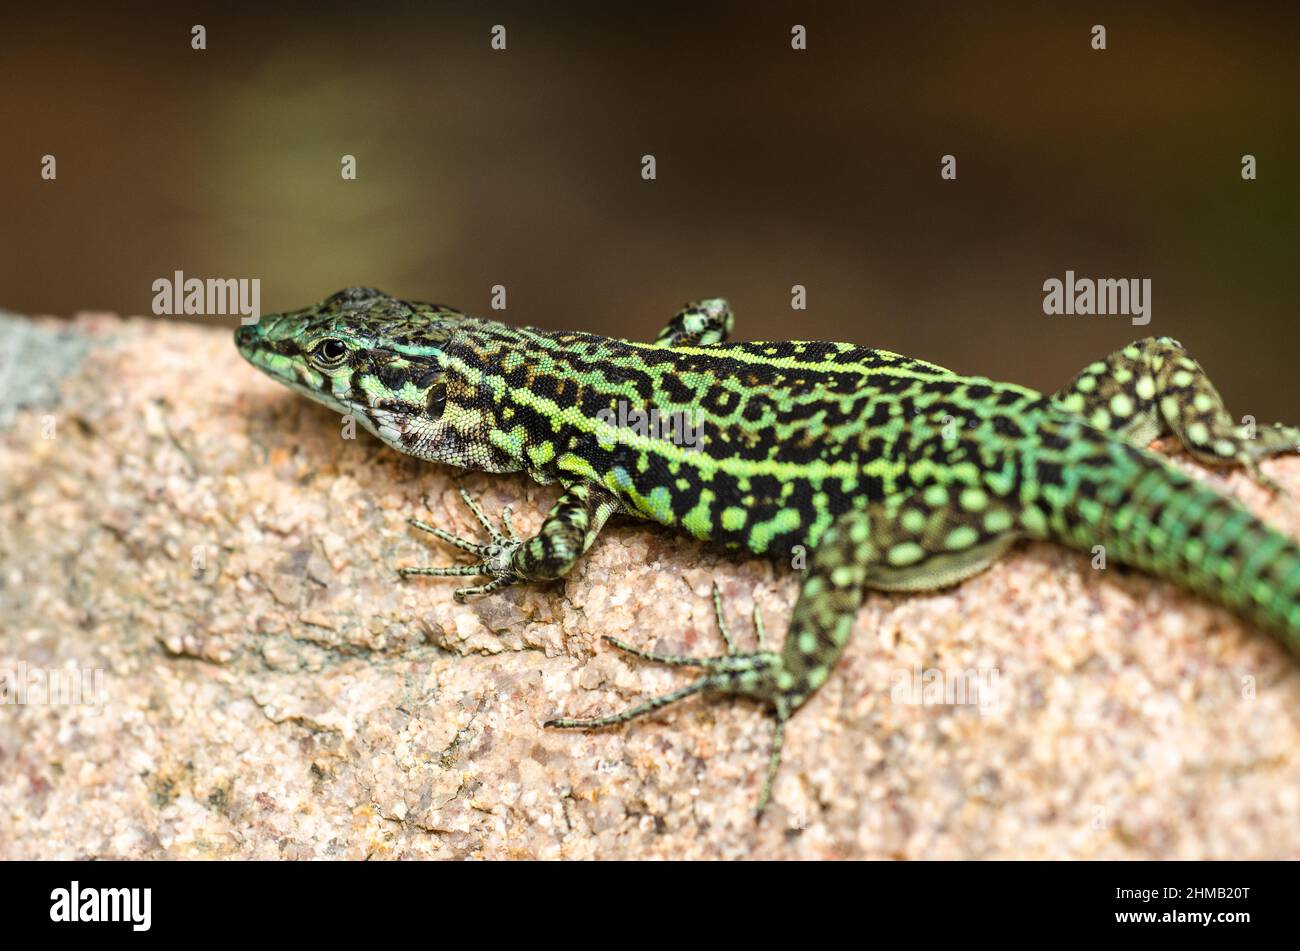 Tyrrhenian wall lizard (Podarcis tiliguerta). Stock Photo